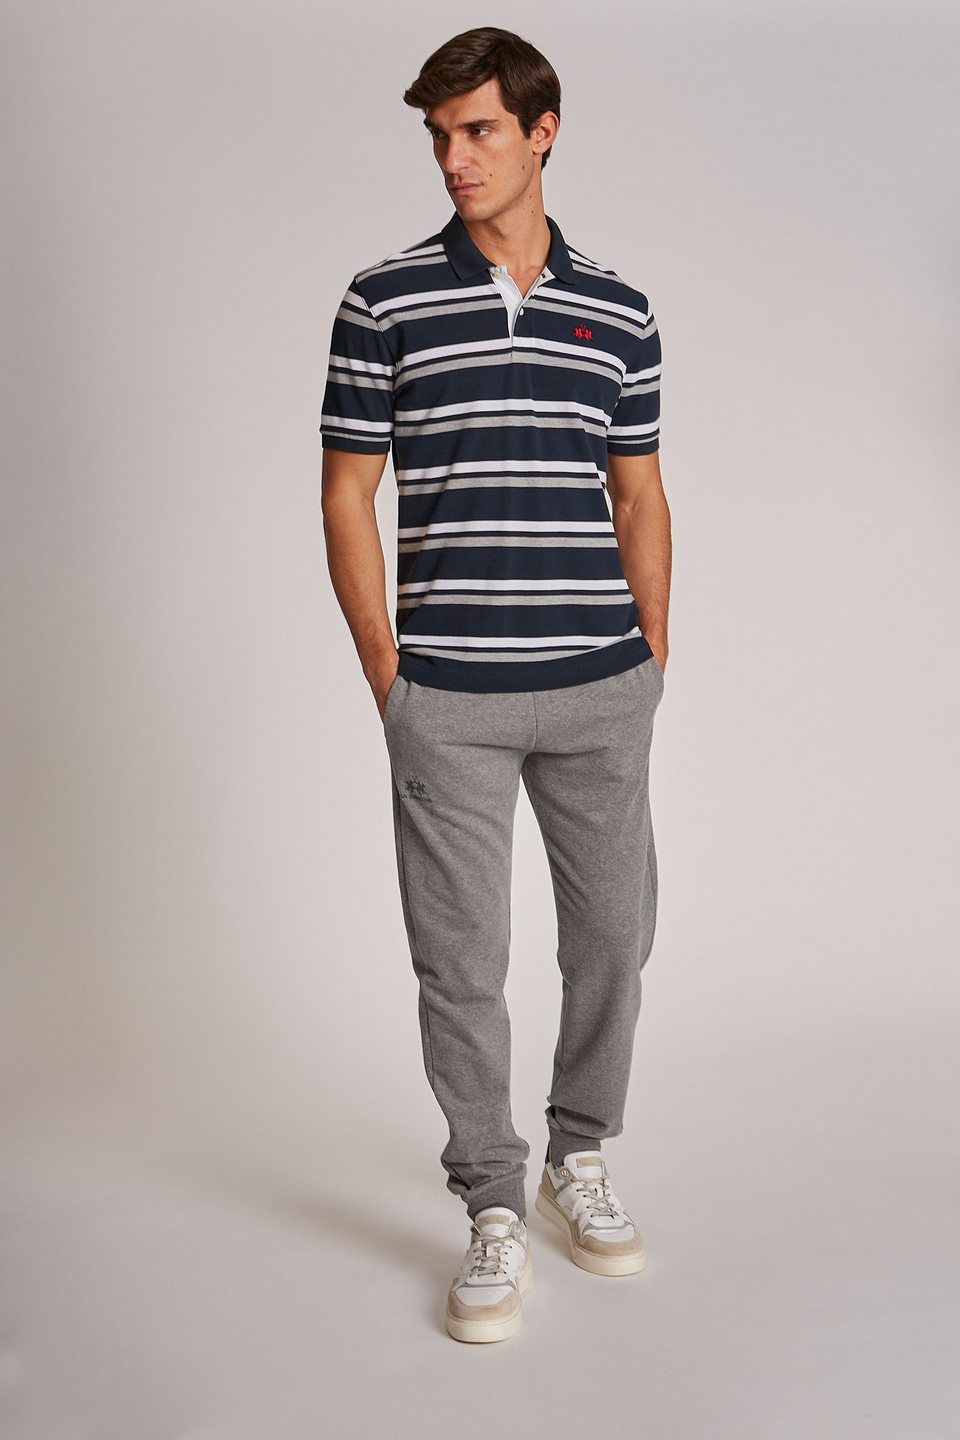 Polo homme 100% coton à manches courtes et coupe classique - La Martina - Official Online Shop